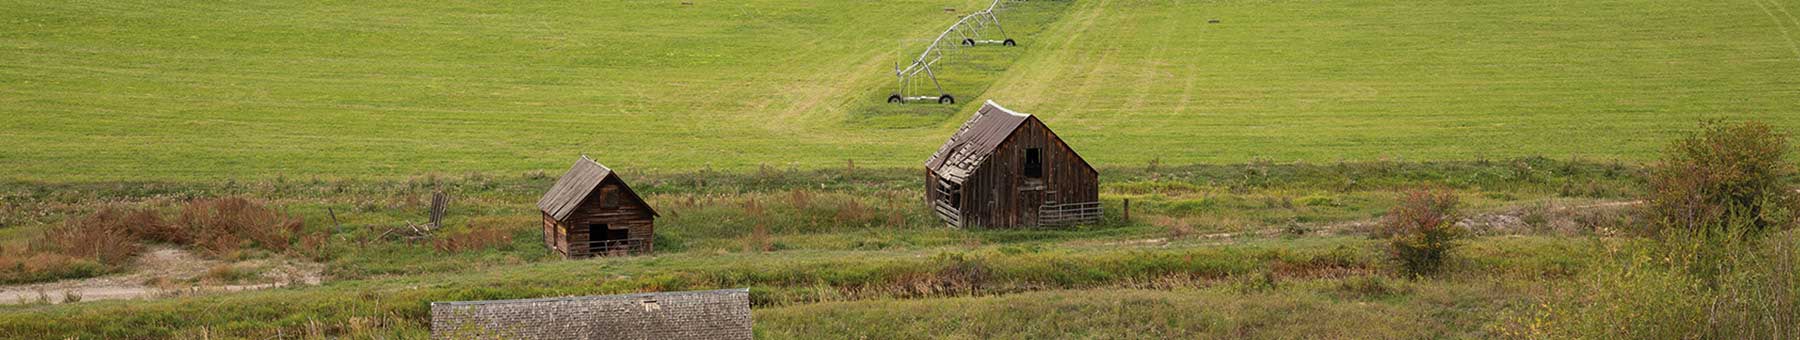 Ramshackle barns in a green field